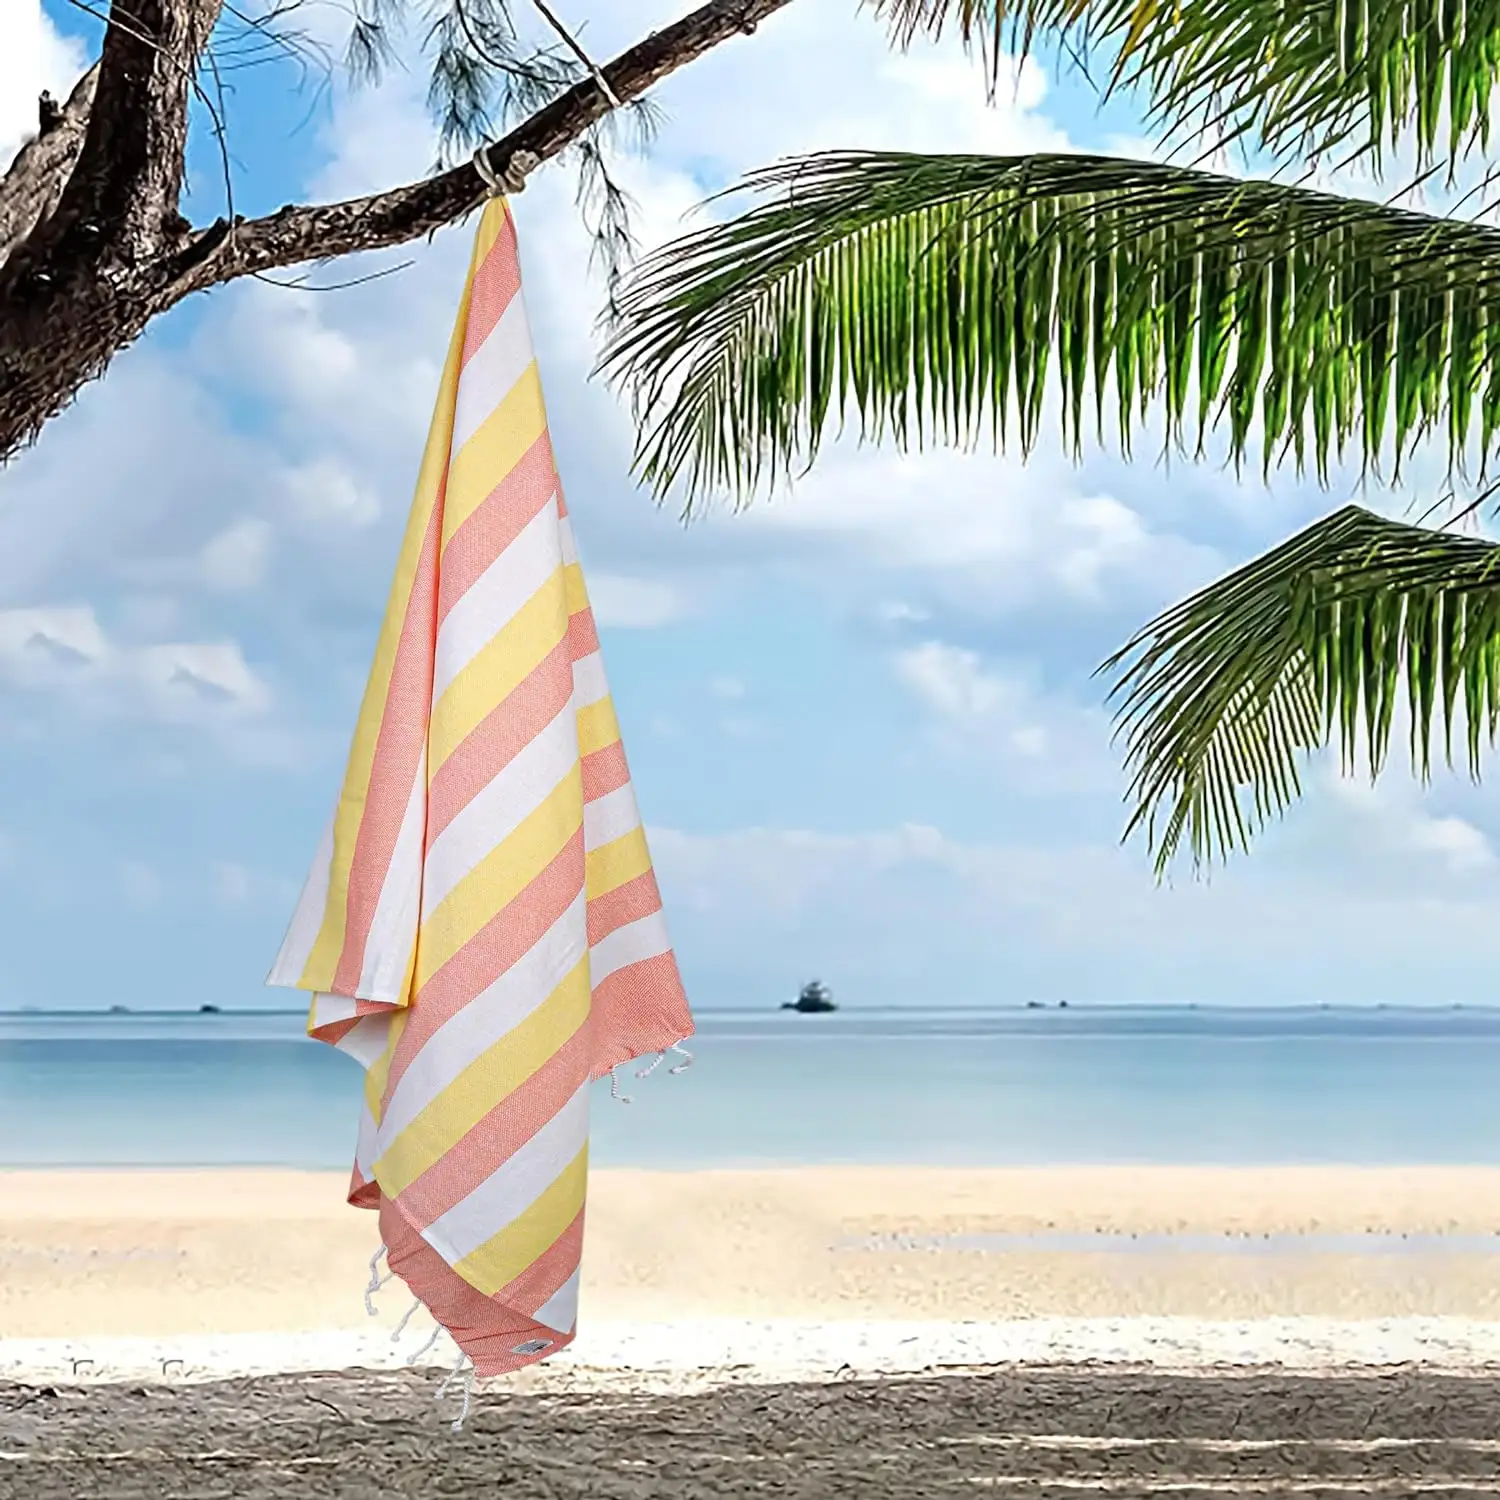 Venta al por mayor reservado terciopelo temático hecho a medida tumbona Yoga baño gimnasio vacaciones playa toalla sábana de baño